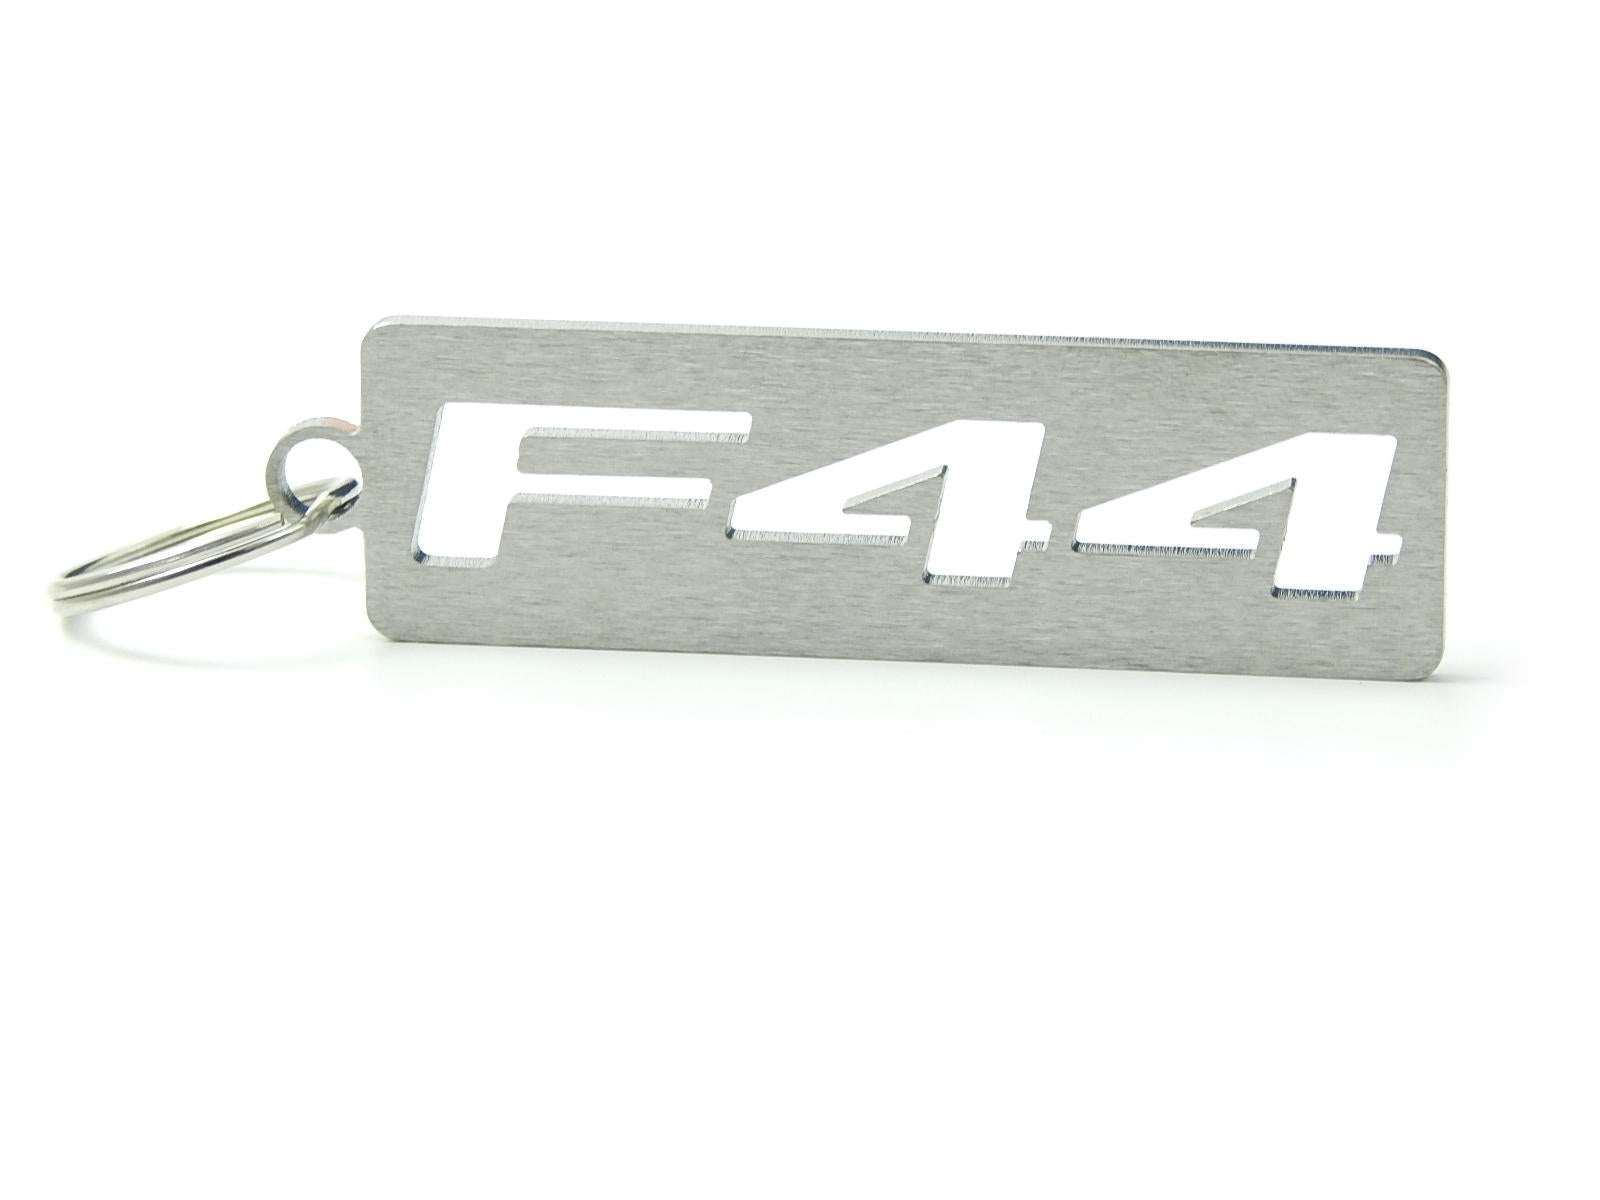 F44 DisagrEE